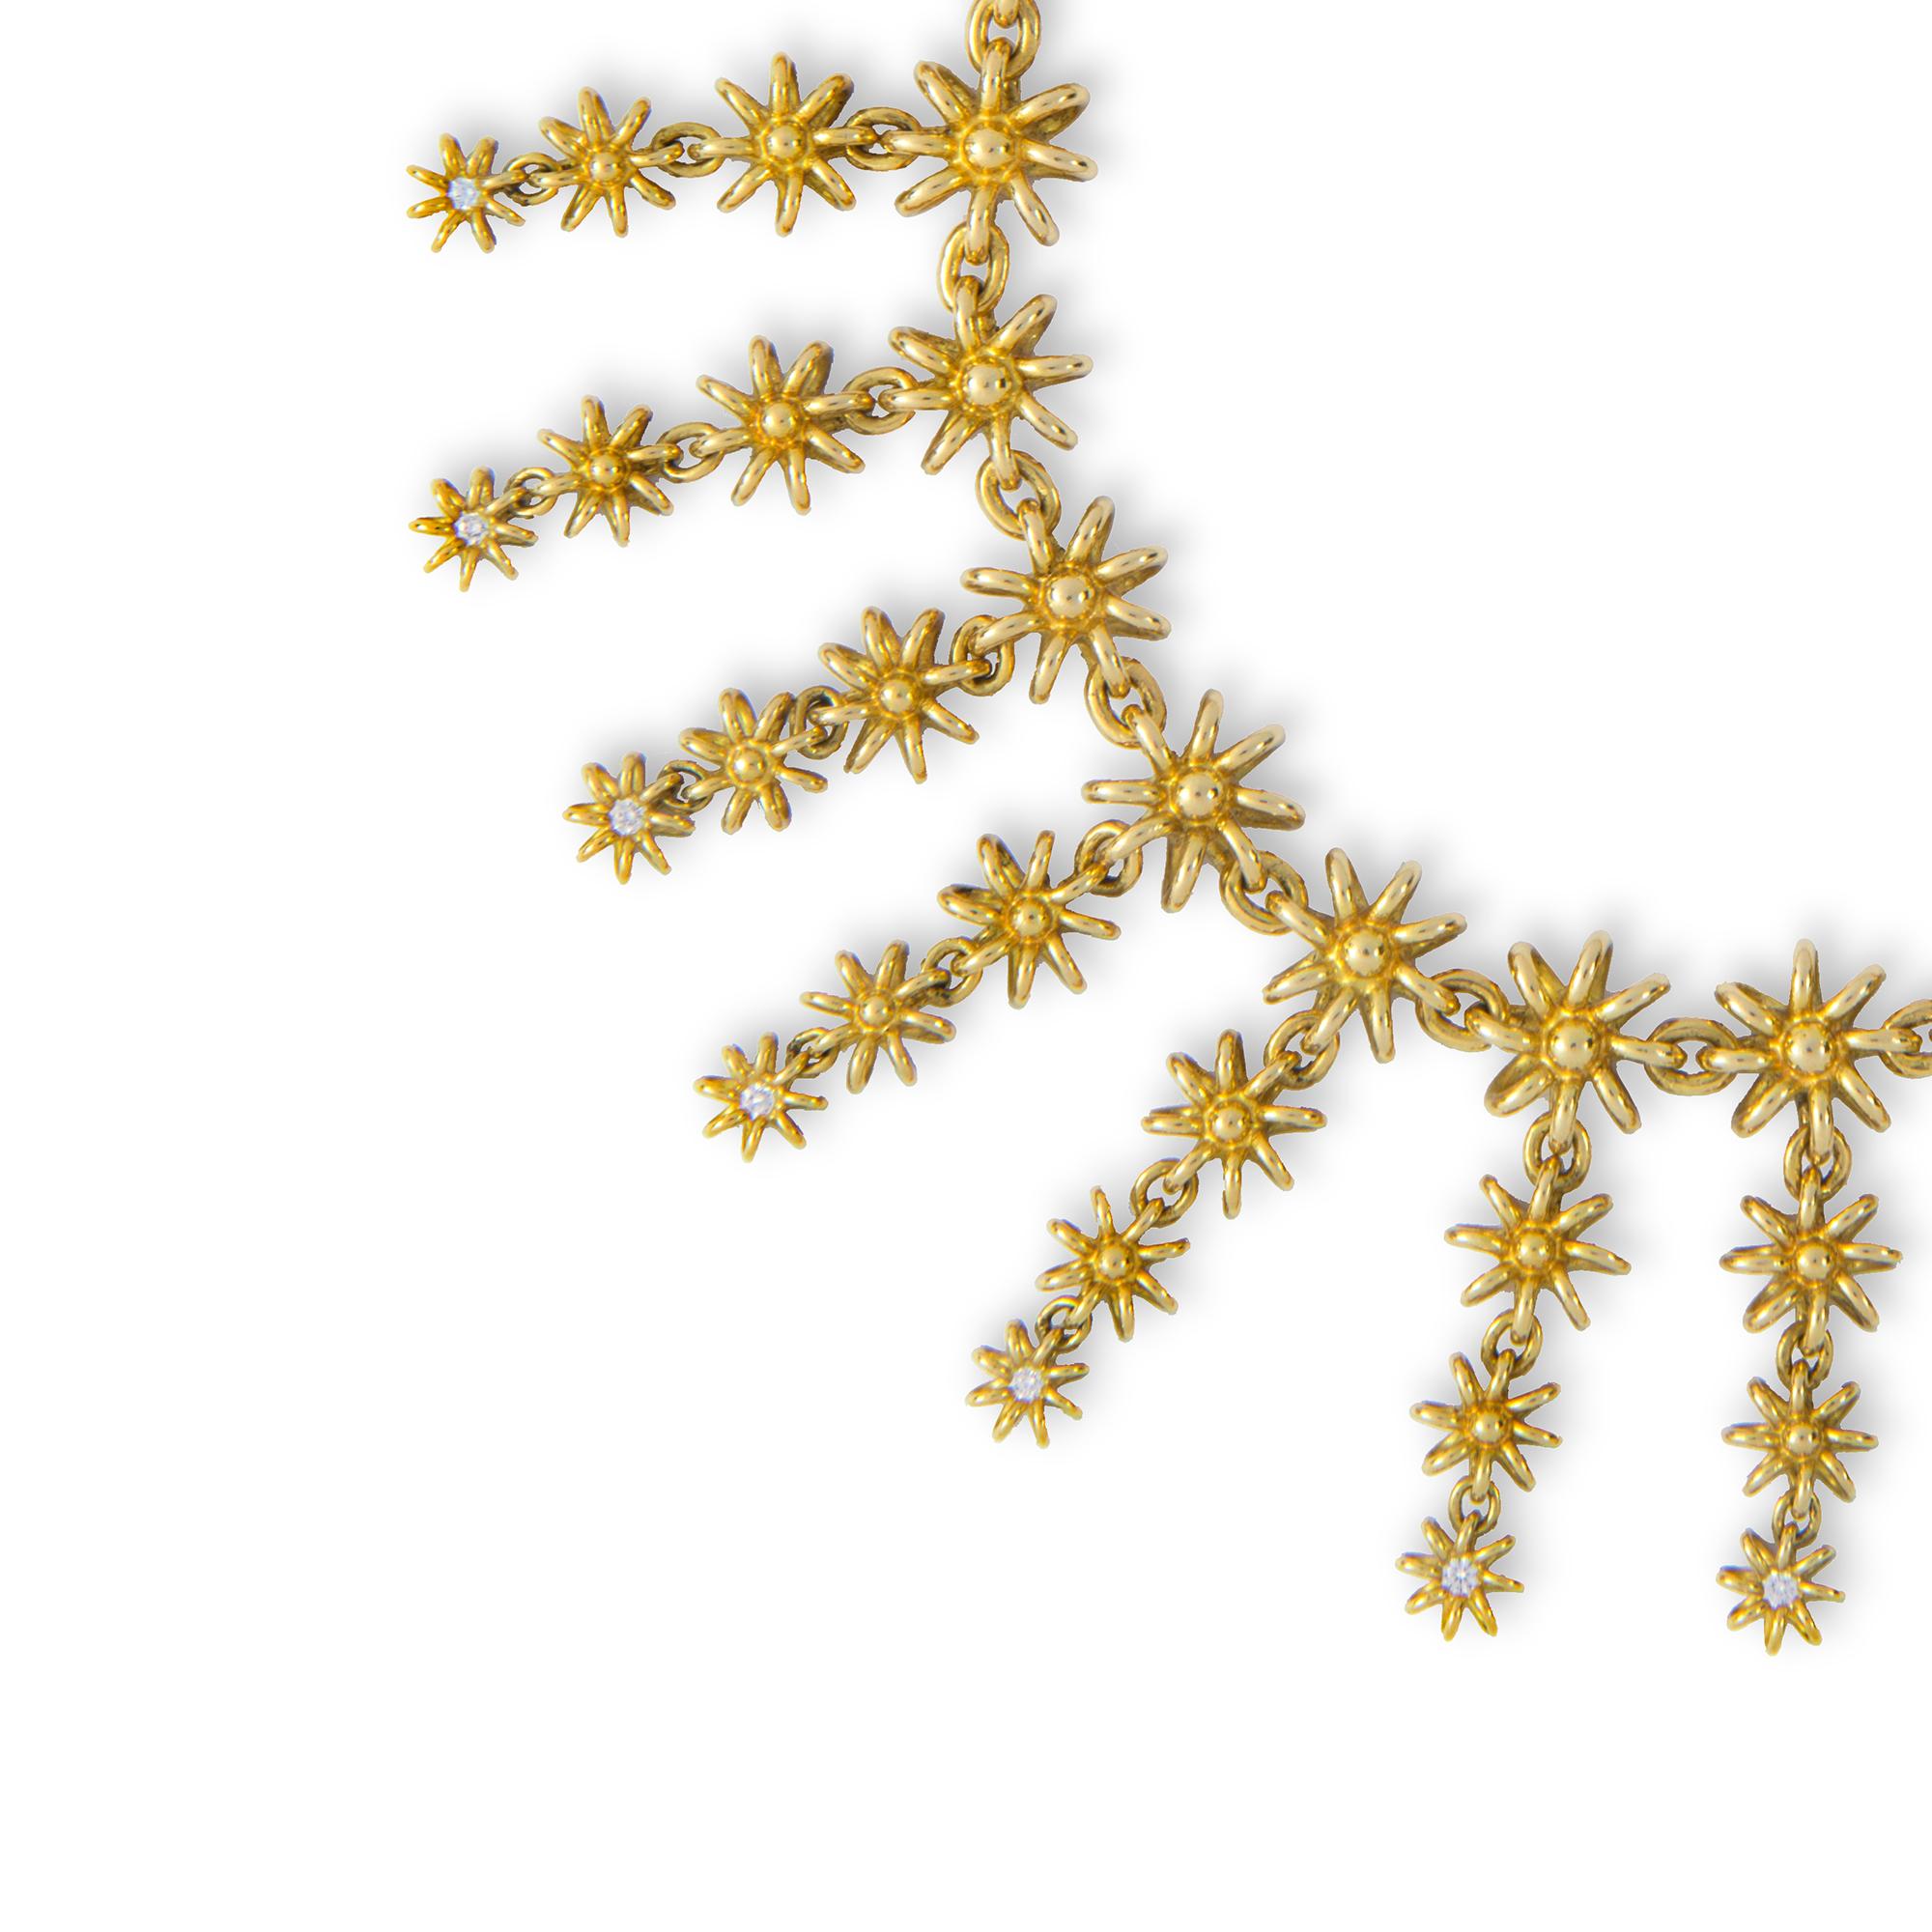 Un bracelet Golden Rain fait main par Lucie Heskett-Brem the Gold Weaver de Lucerne, serti de vingt-deux diamants ronds de taille brillant, poinçonné en or 18ct, mesurant approximativement 17,5 x 2,4cm, poids brut.  29,7 grammes.

Si vous décidez de